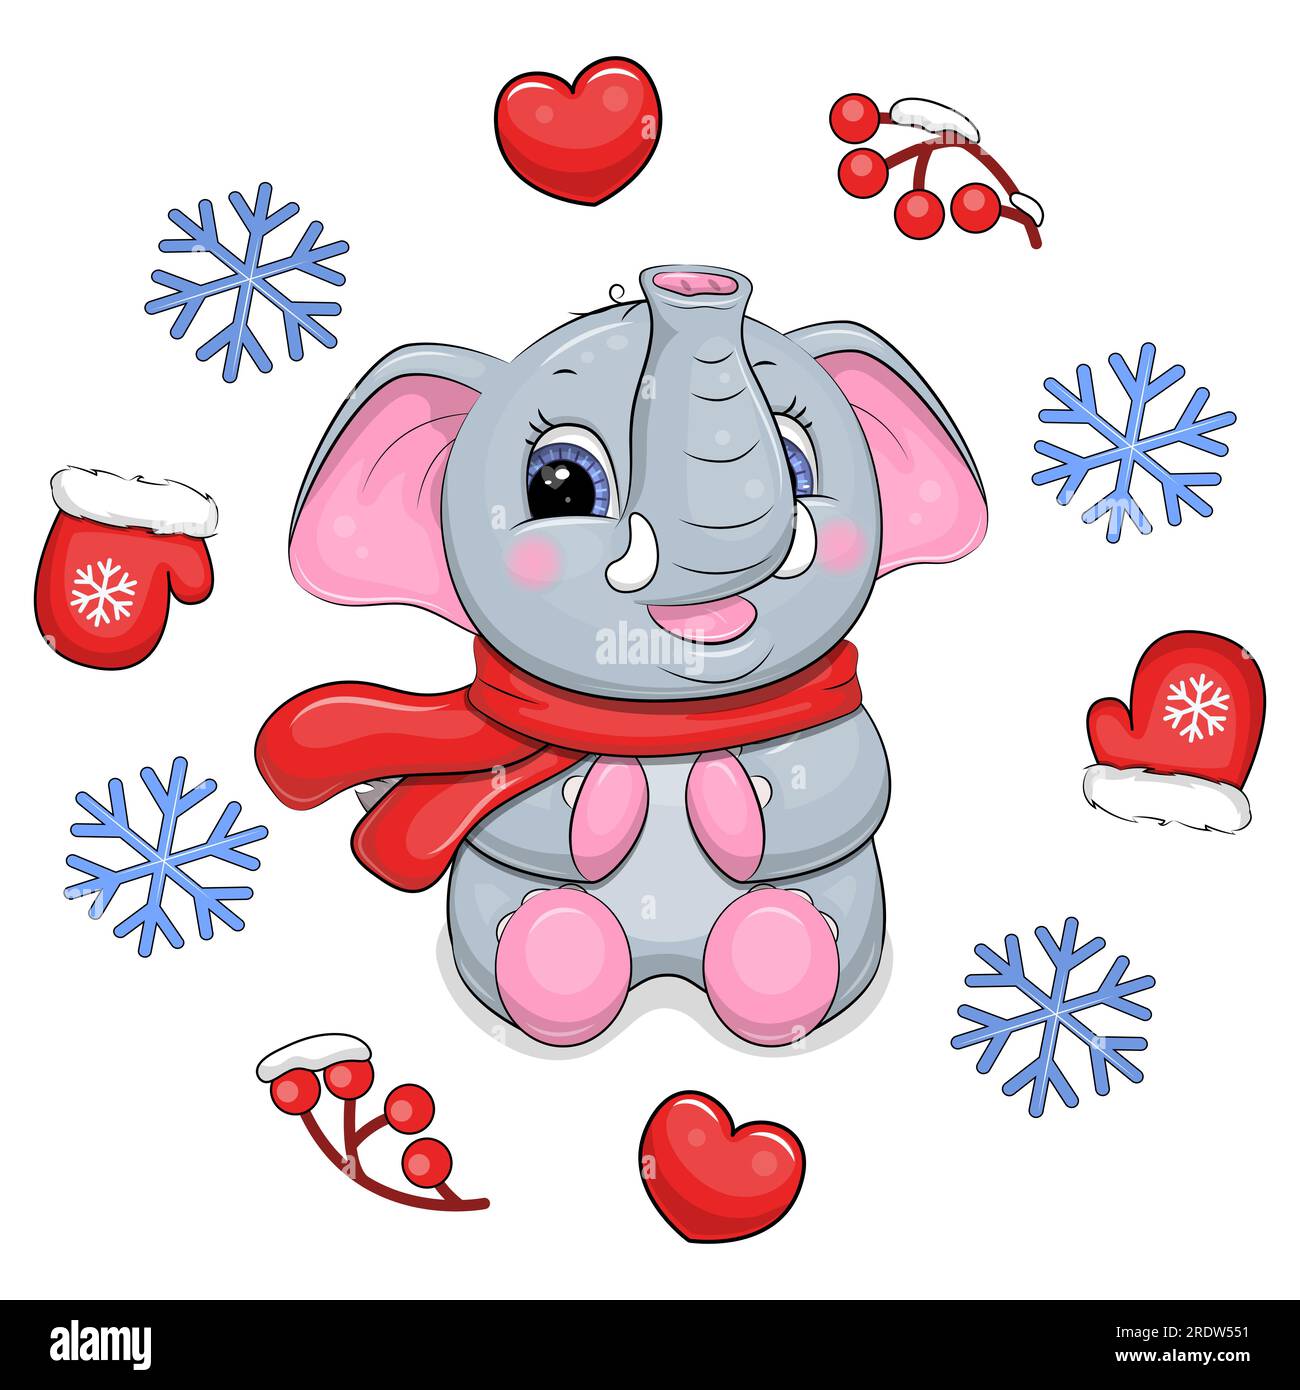 Mignon éléphant de dessin animé avec une écharpe rouge dans un cadre d'hiver. Illustration vectorielle d'un animal avec des mitaines, des coeurs rouges, des baies, des flocons de neige bleus. Illustration de Vecteur